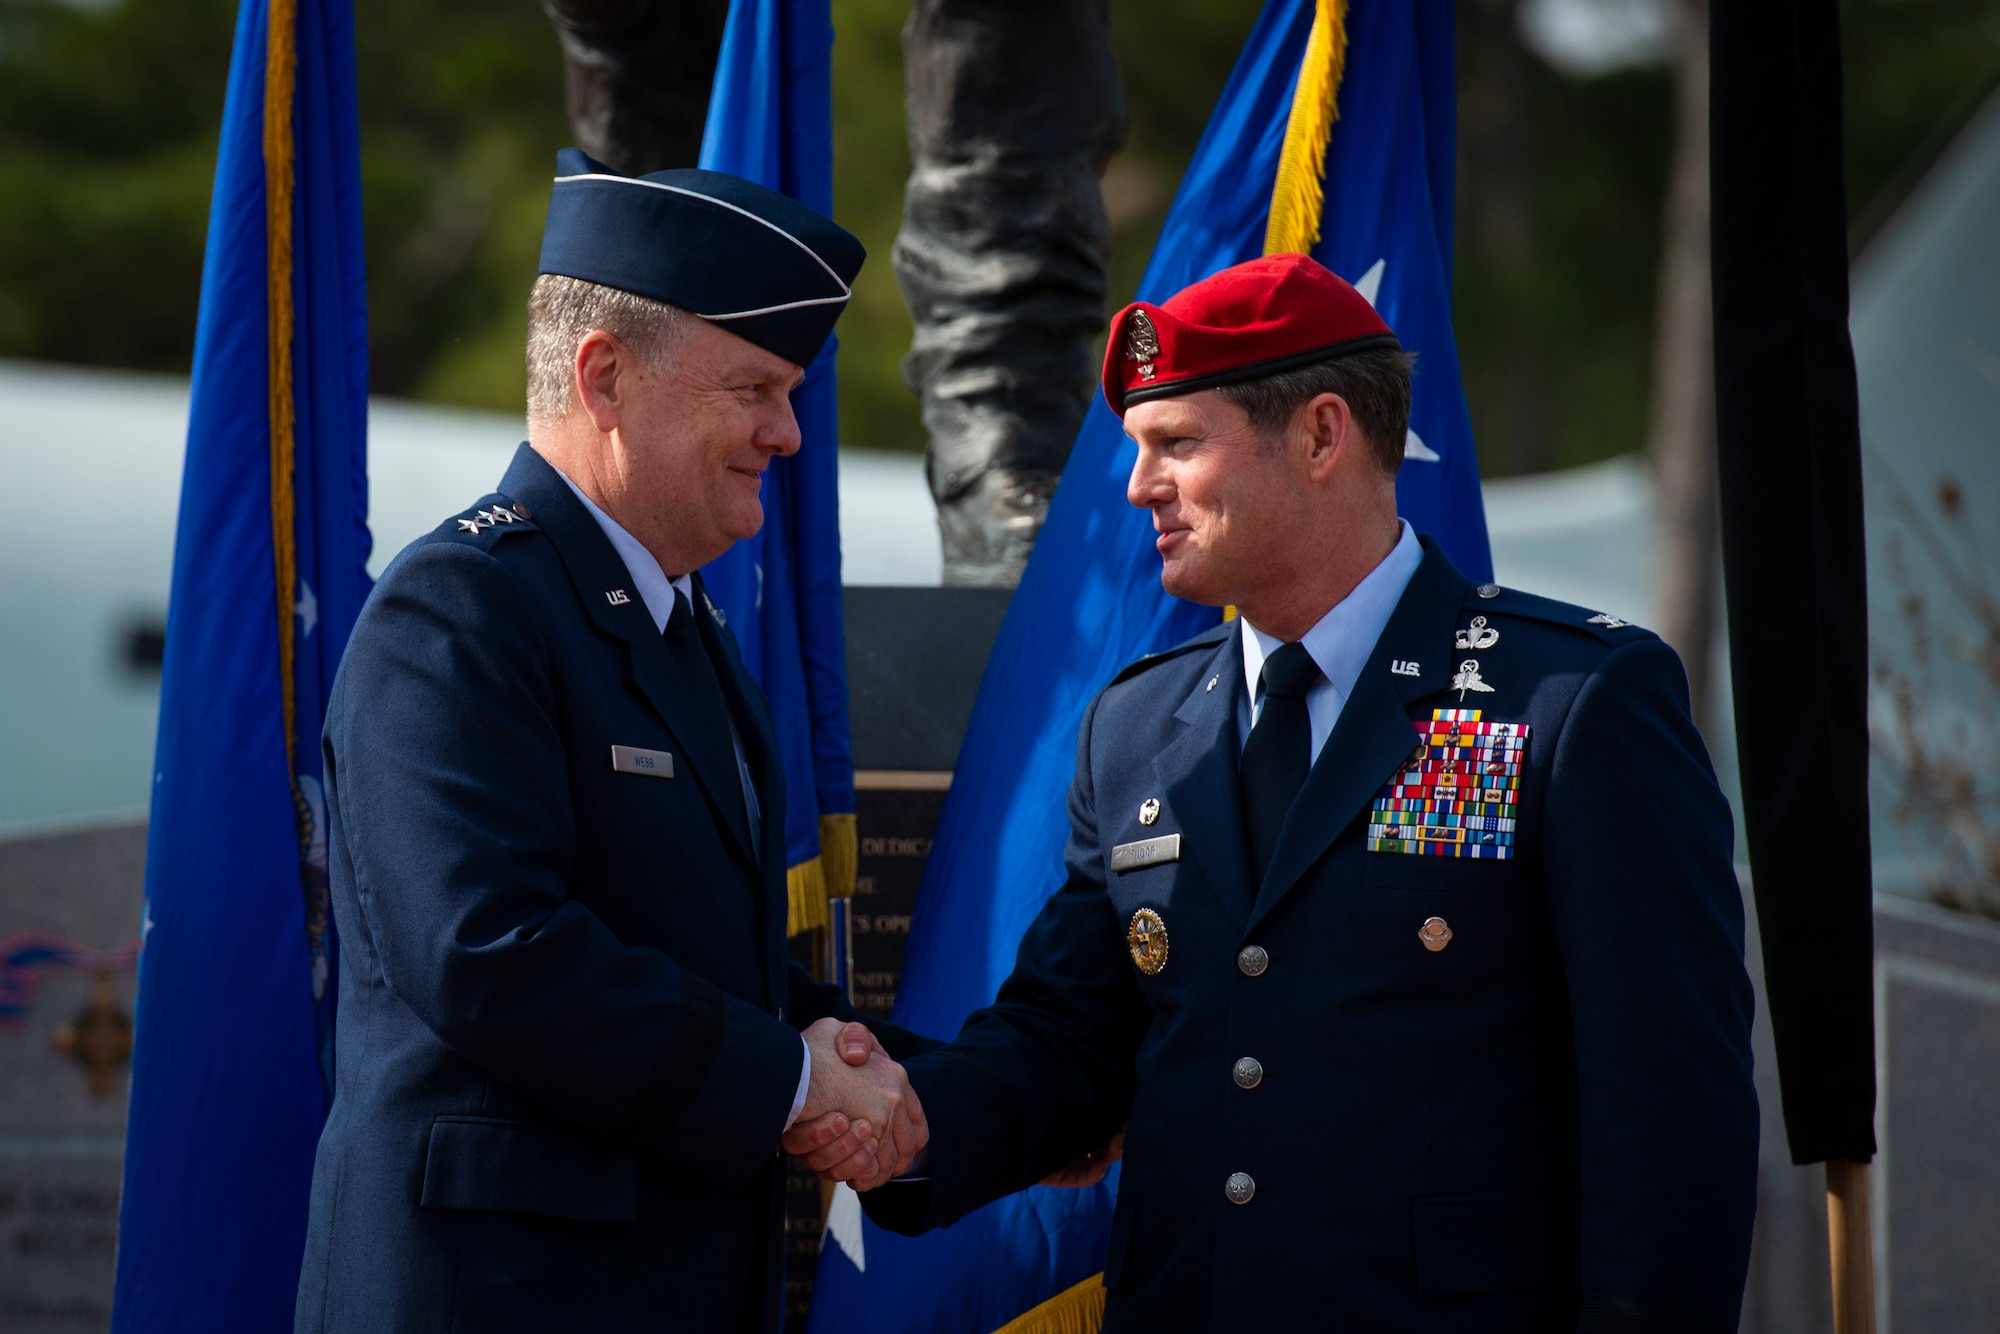 U.S. Air Force Lt. Gen. Brad Webb, left, commander of Air Force Special Operations Command, congratulates U.S. Air Force Brig. Gen. Claude K. Tudor, Jr., commander of the 24th Special Operations Wing, during a ceremony at Hurlburt Field, Florida, Feb. 8, 2019.